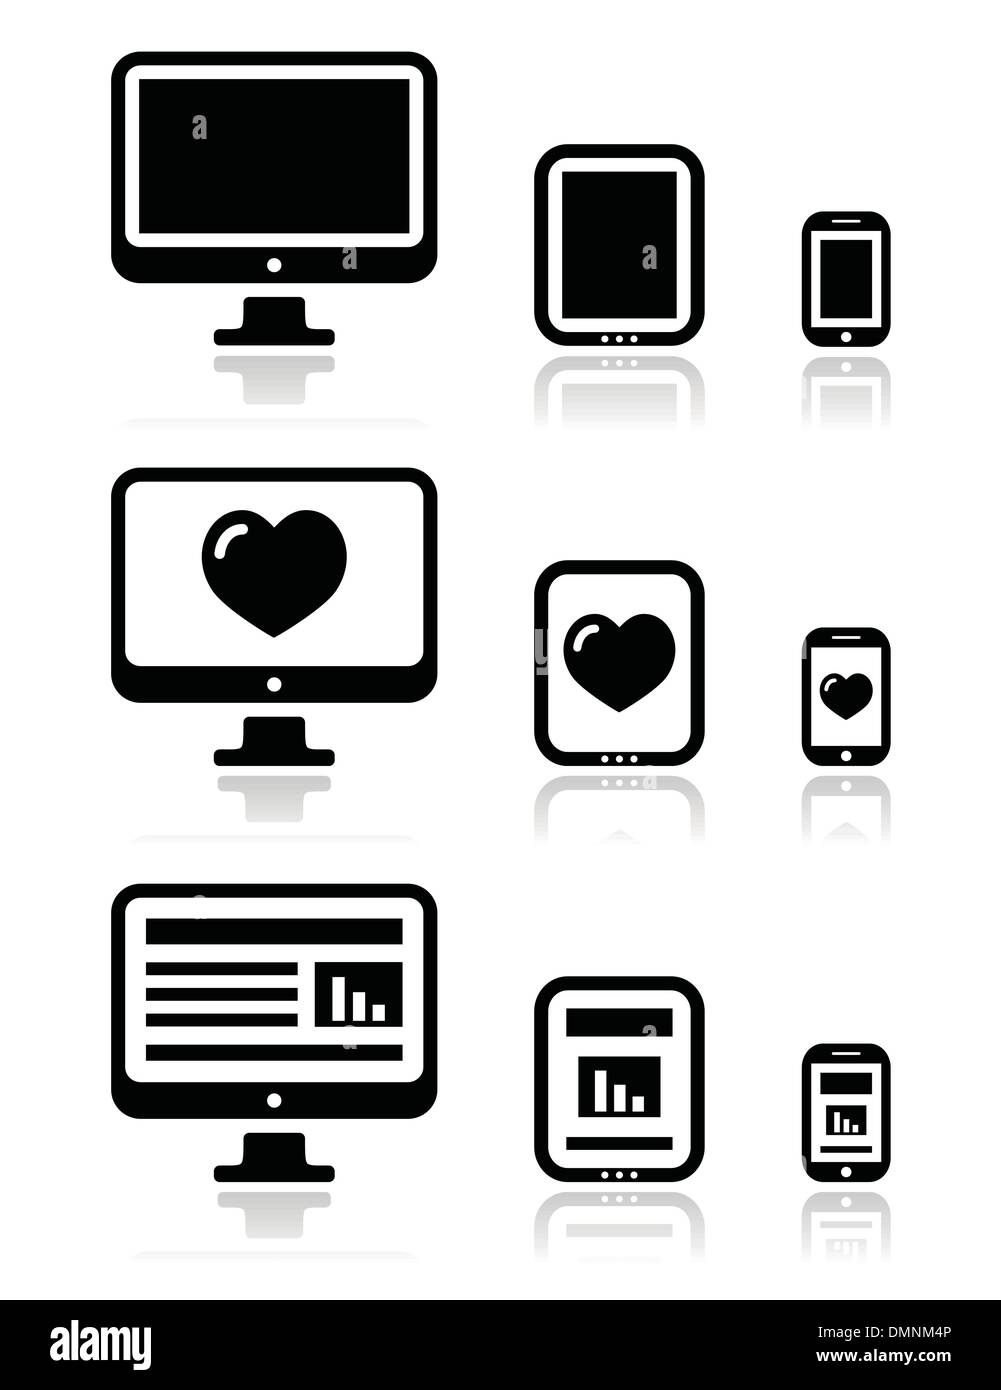 Reattivo di disegno di Web site - schermo di computer, mobile tablet set di icone Illustrazione Vettoriale